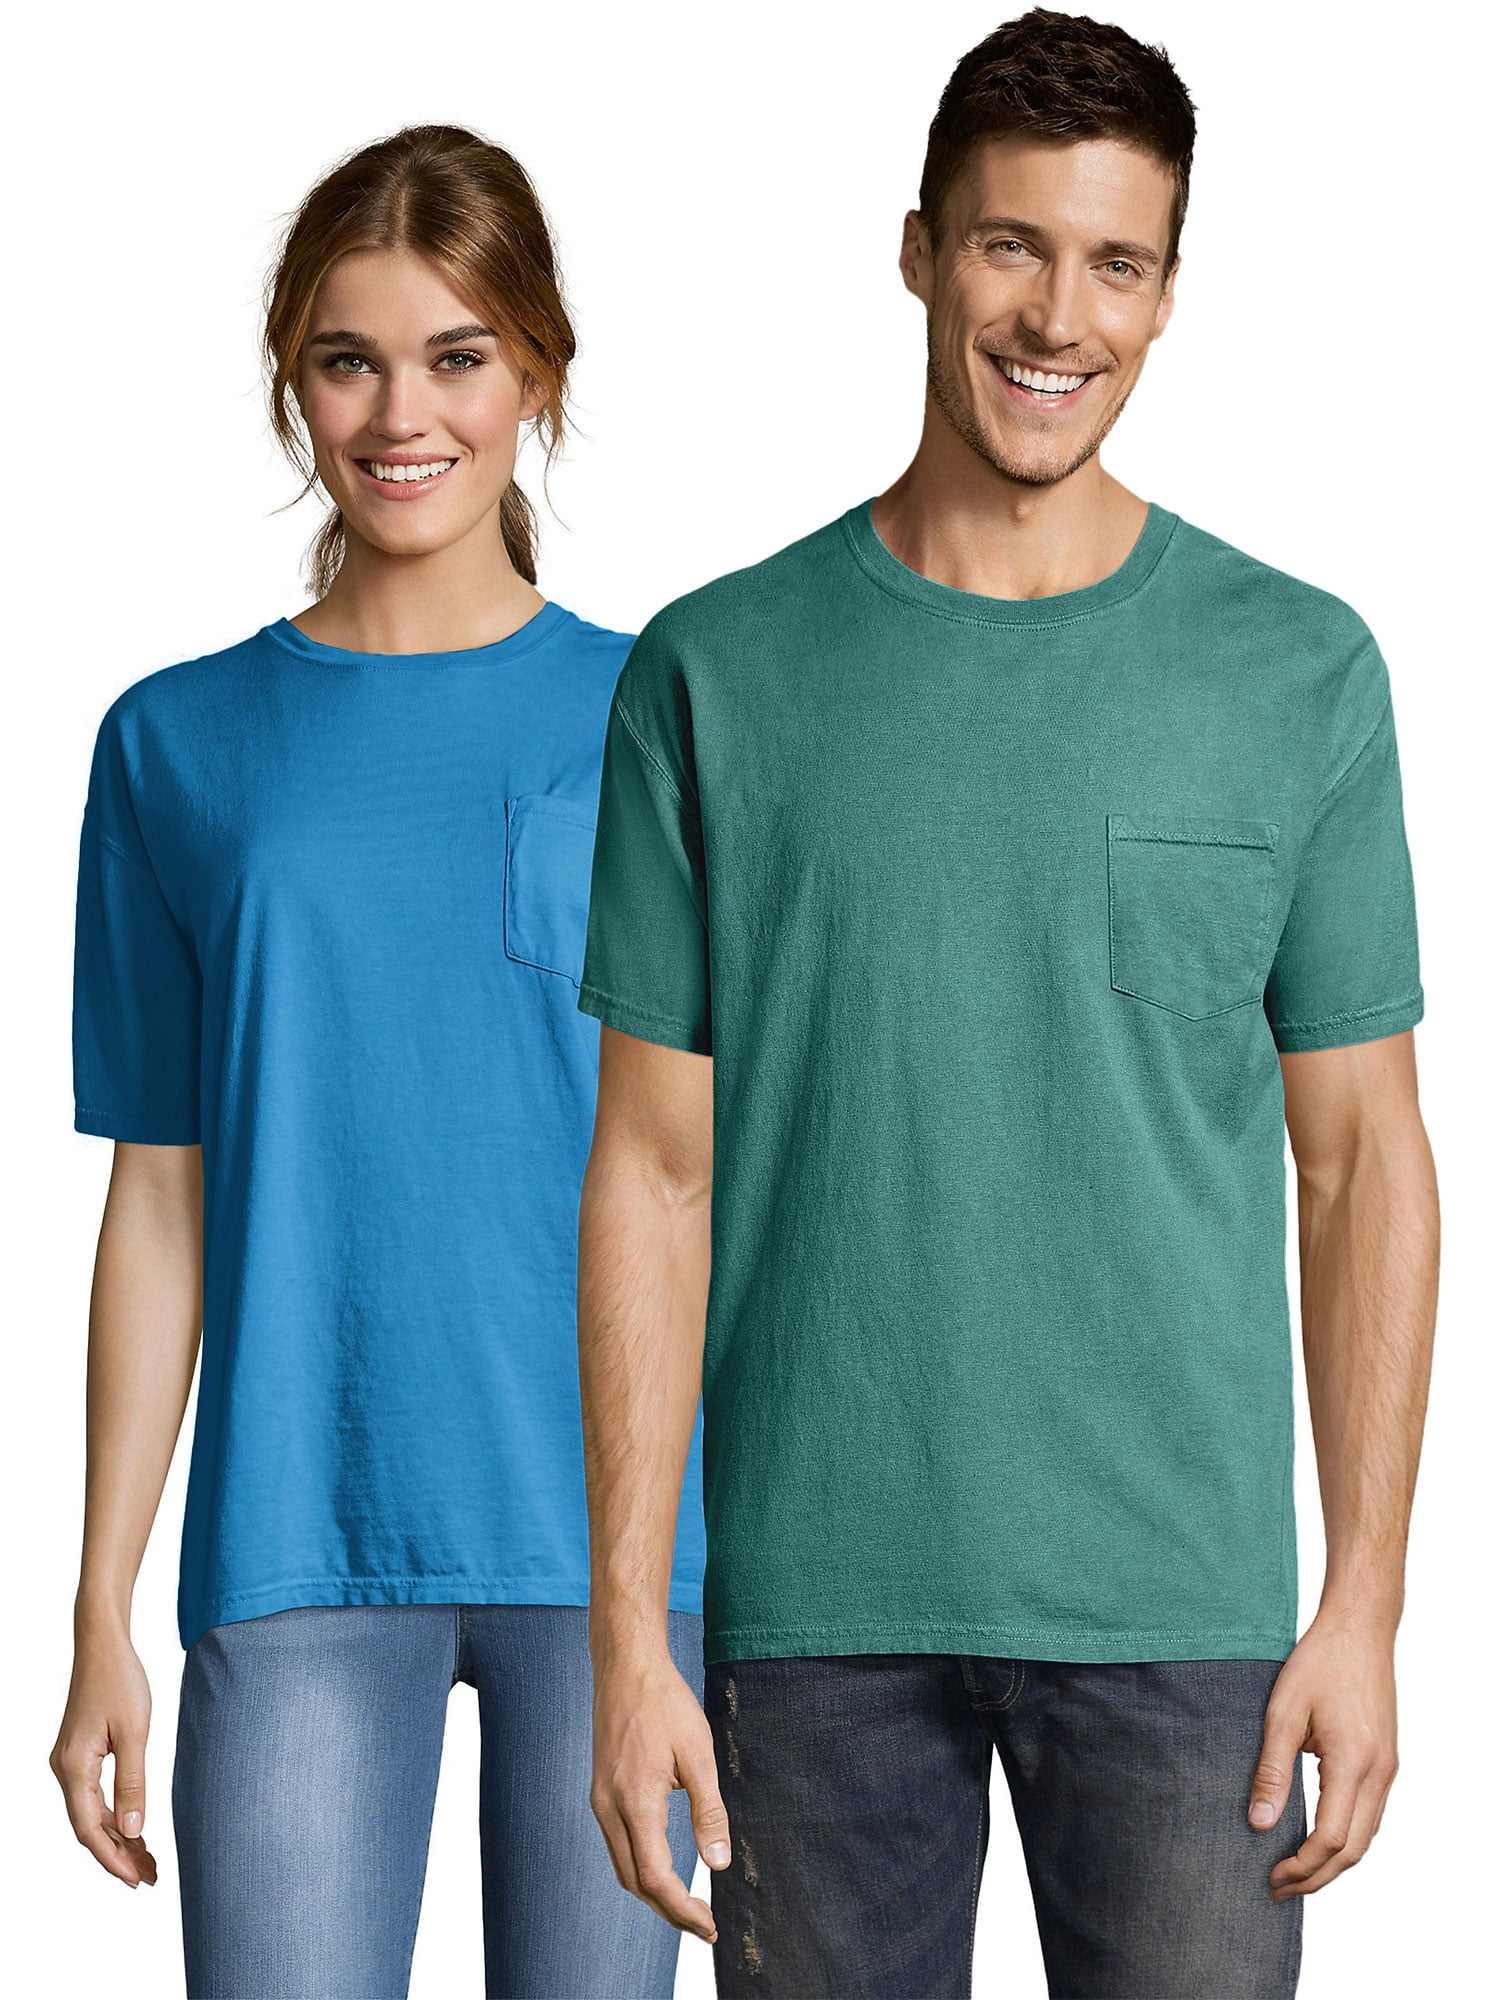 træthed Se internettet Disciplin Hanes Men's ComfortWash Garment Dyed Short Sleeve Pocket T-shirt -  Walmart.com